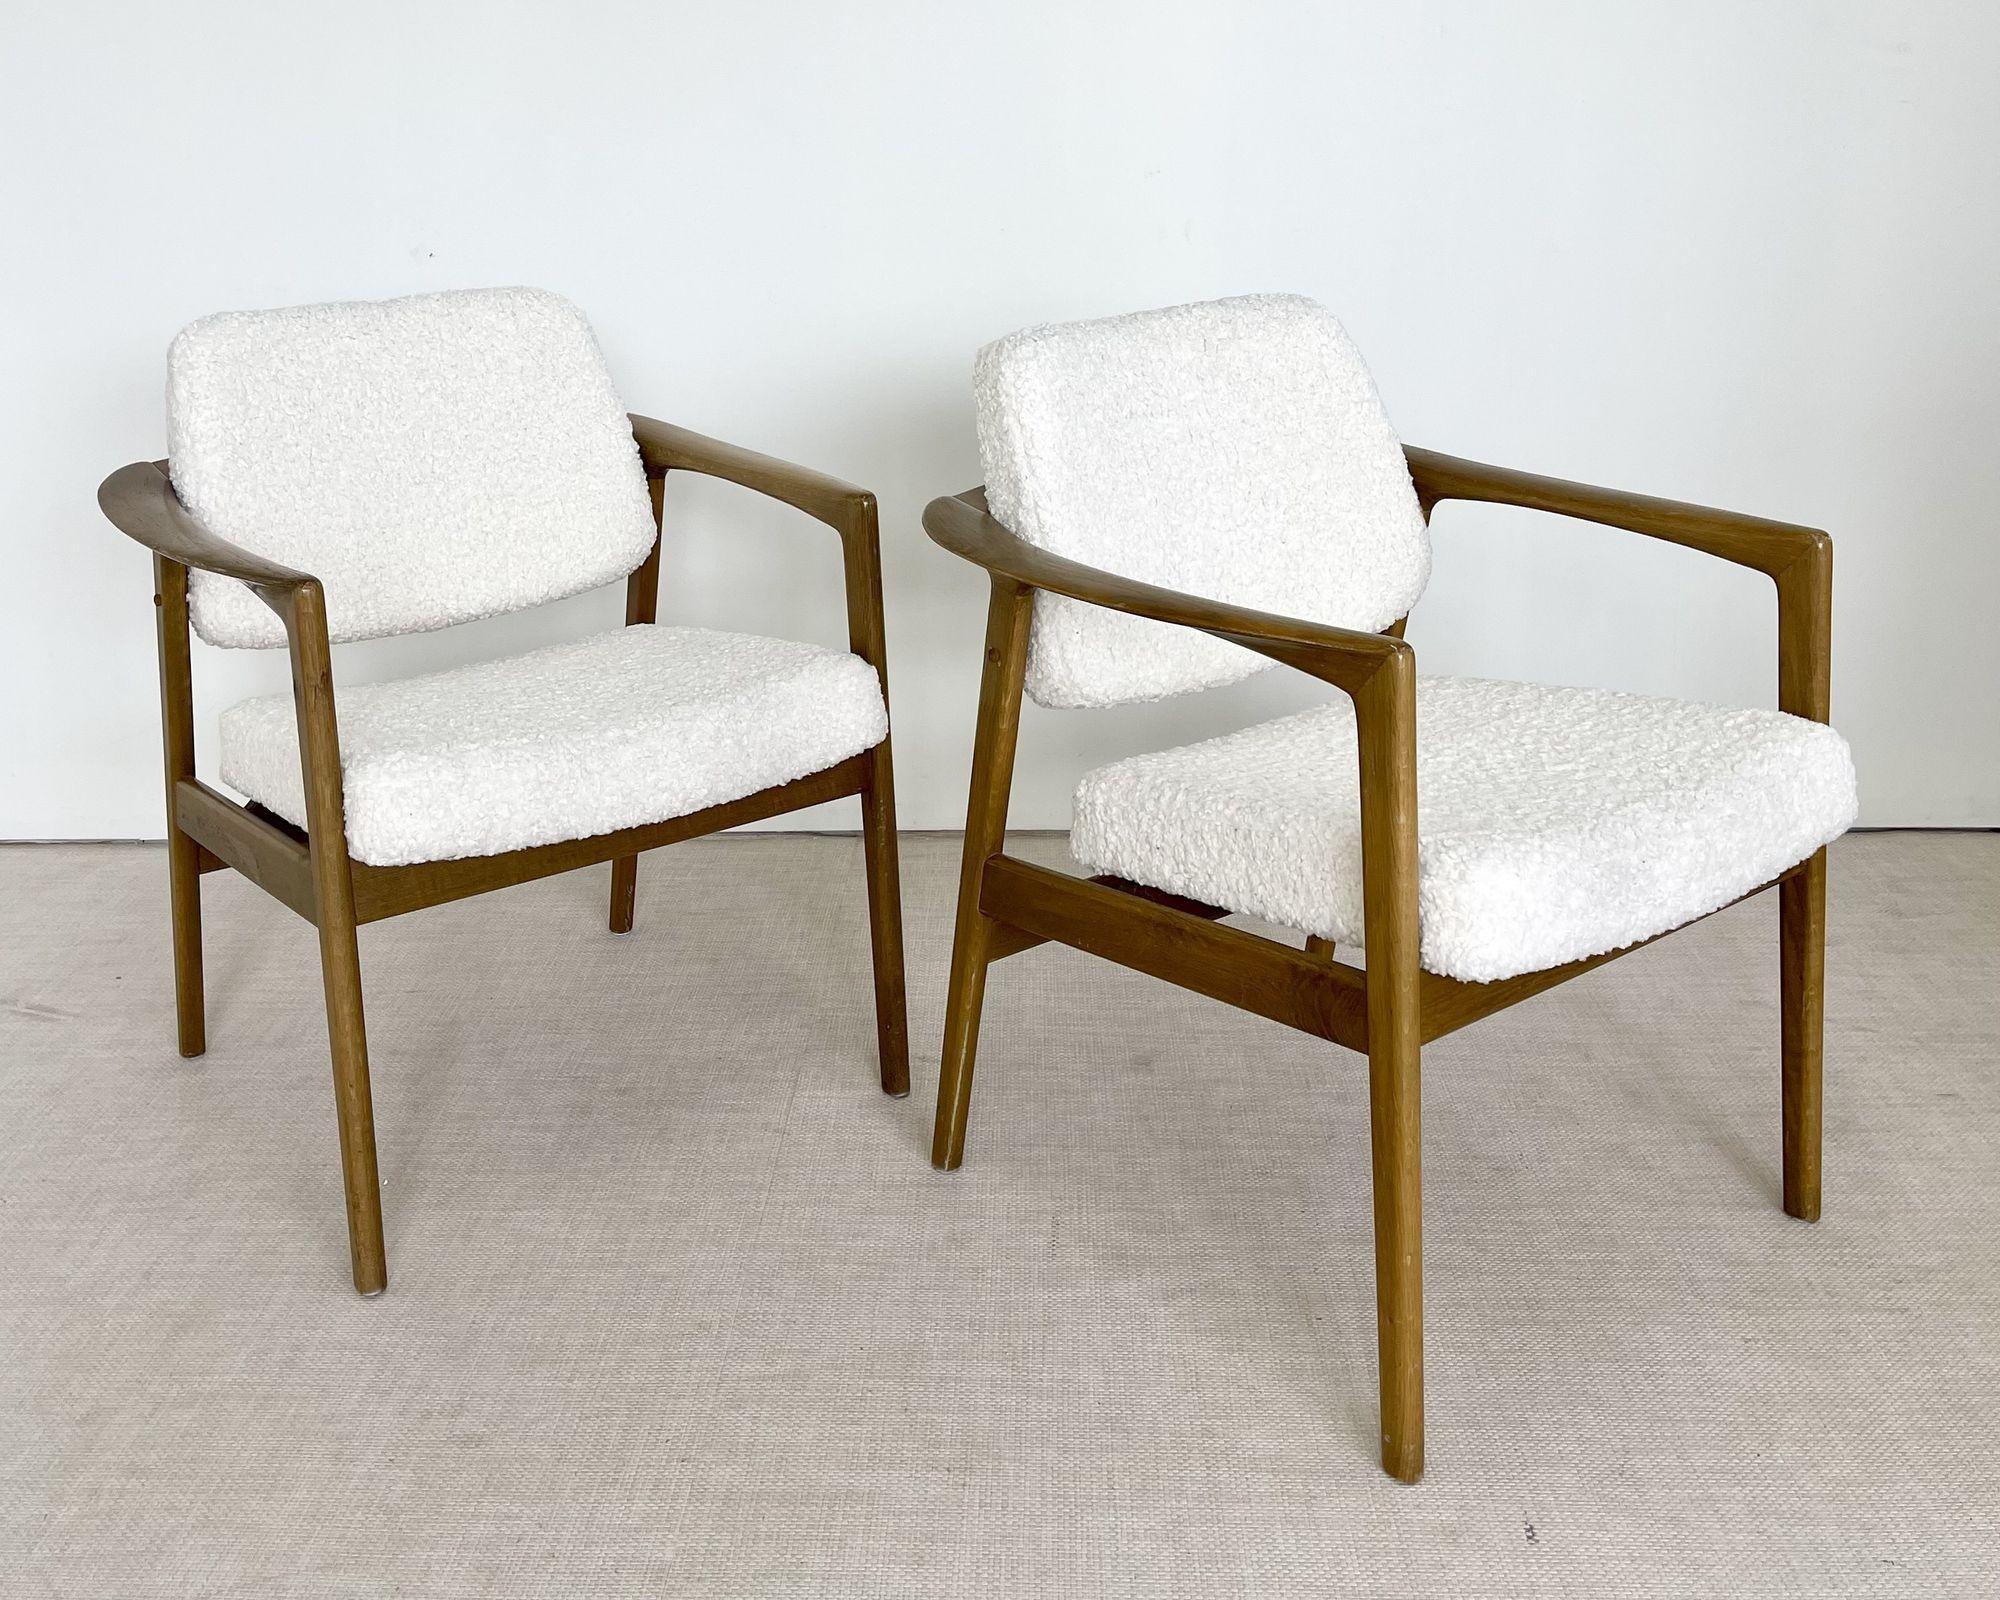 Paire de fauteuils ou de chaises longues du milieu du siècle en shearling blanc et chêne

Chaises longues modernistes dans un luxueux tissu en shearling blanc véritable. Les cadres sont fabriqués en chêne massif et sont robustes. 

Similaire à Folke